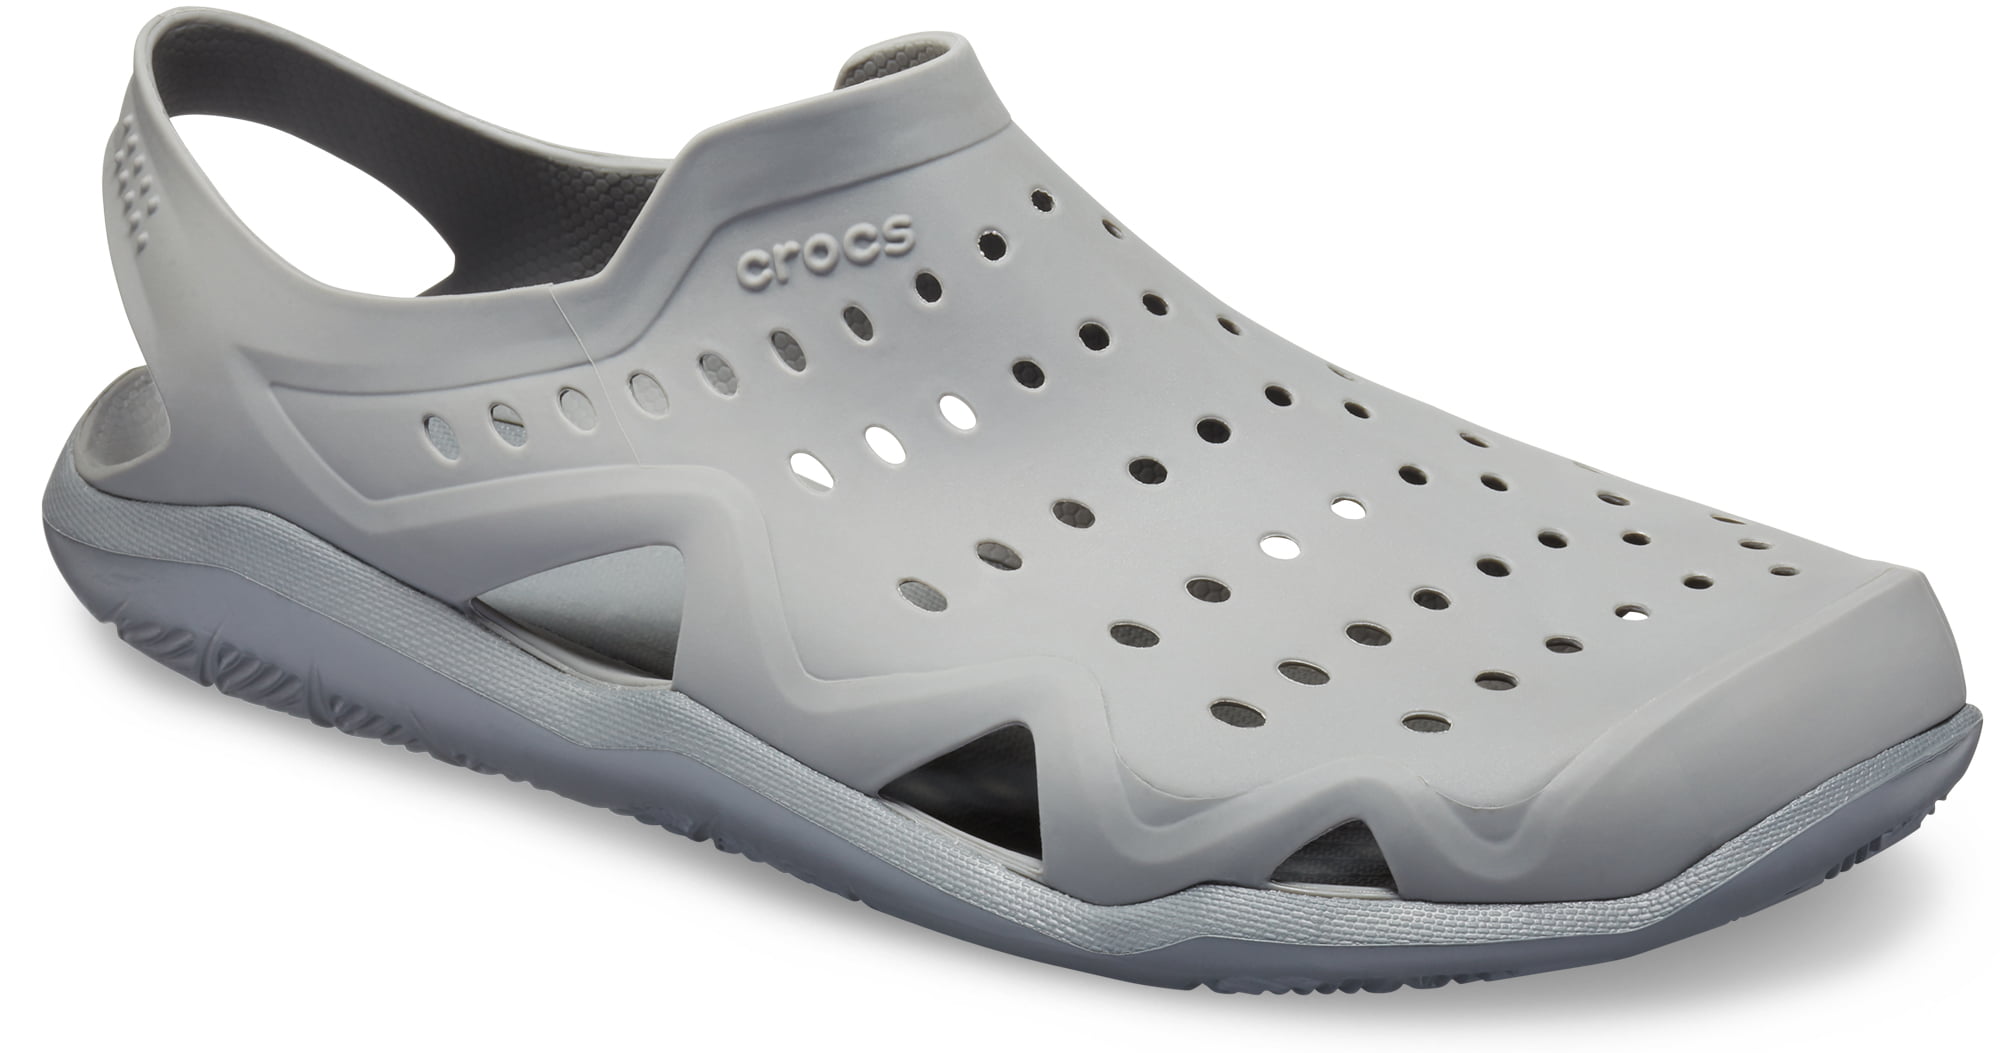 Crocs Men's Swiftwater Wave Water Shoe